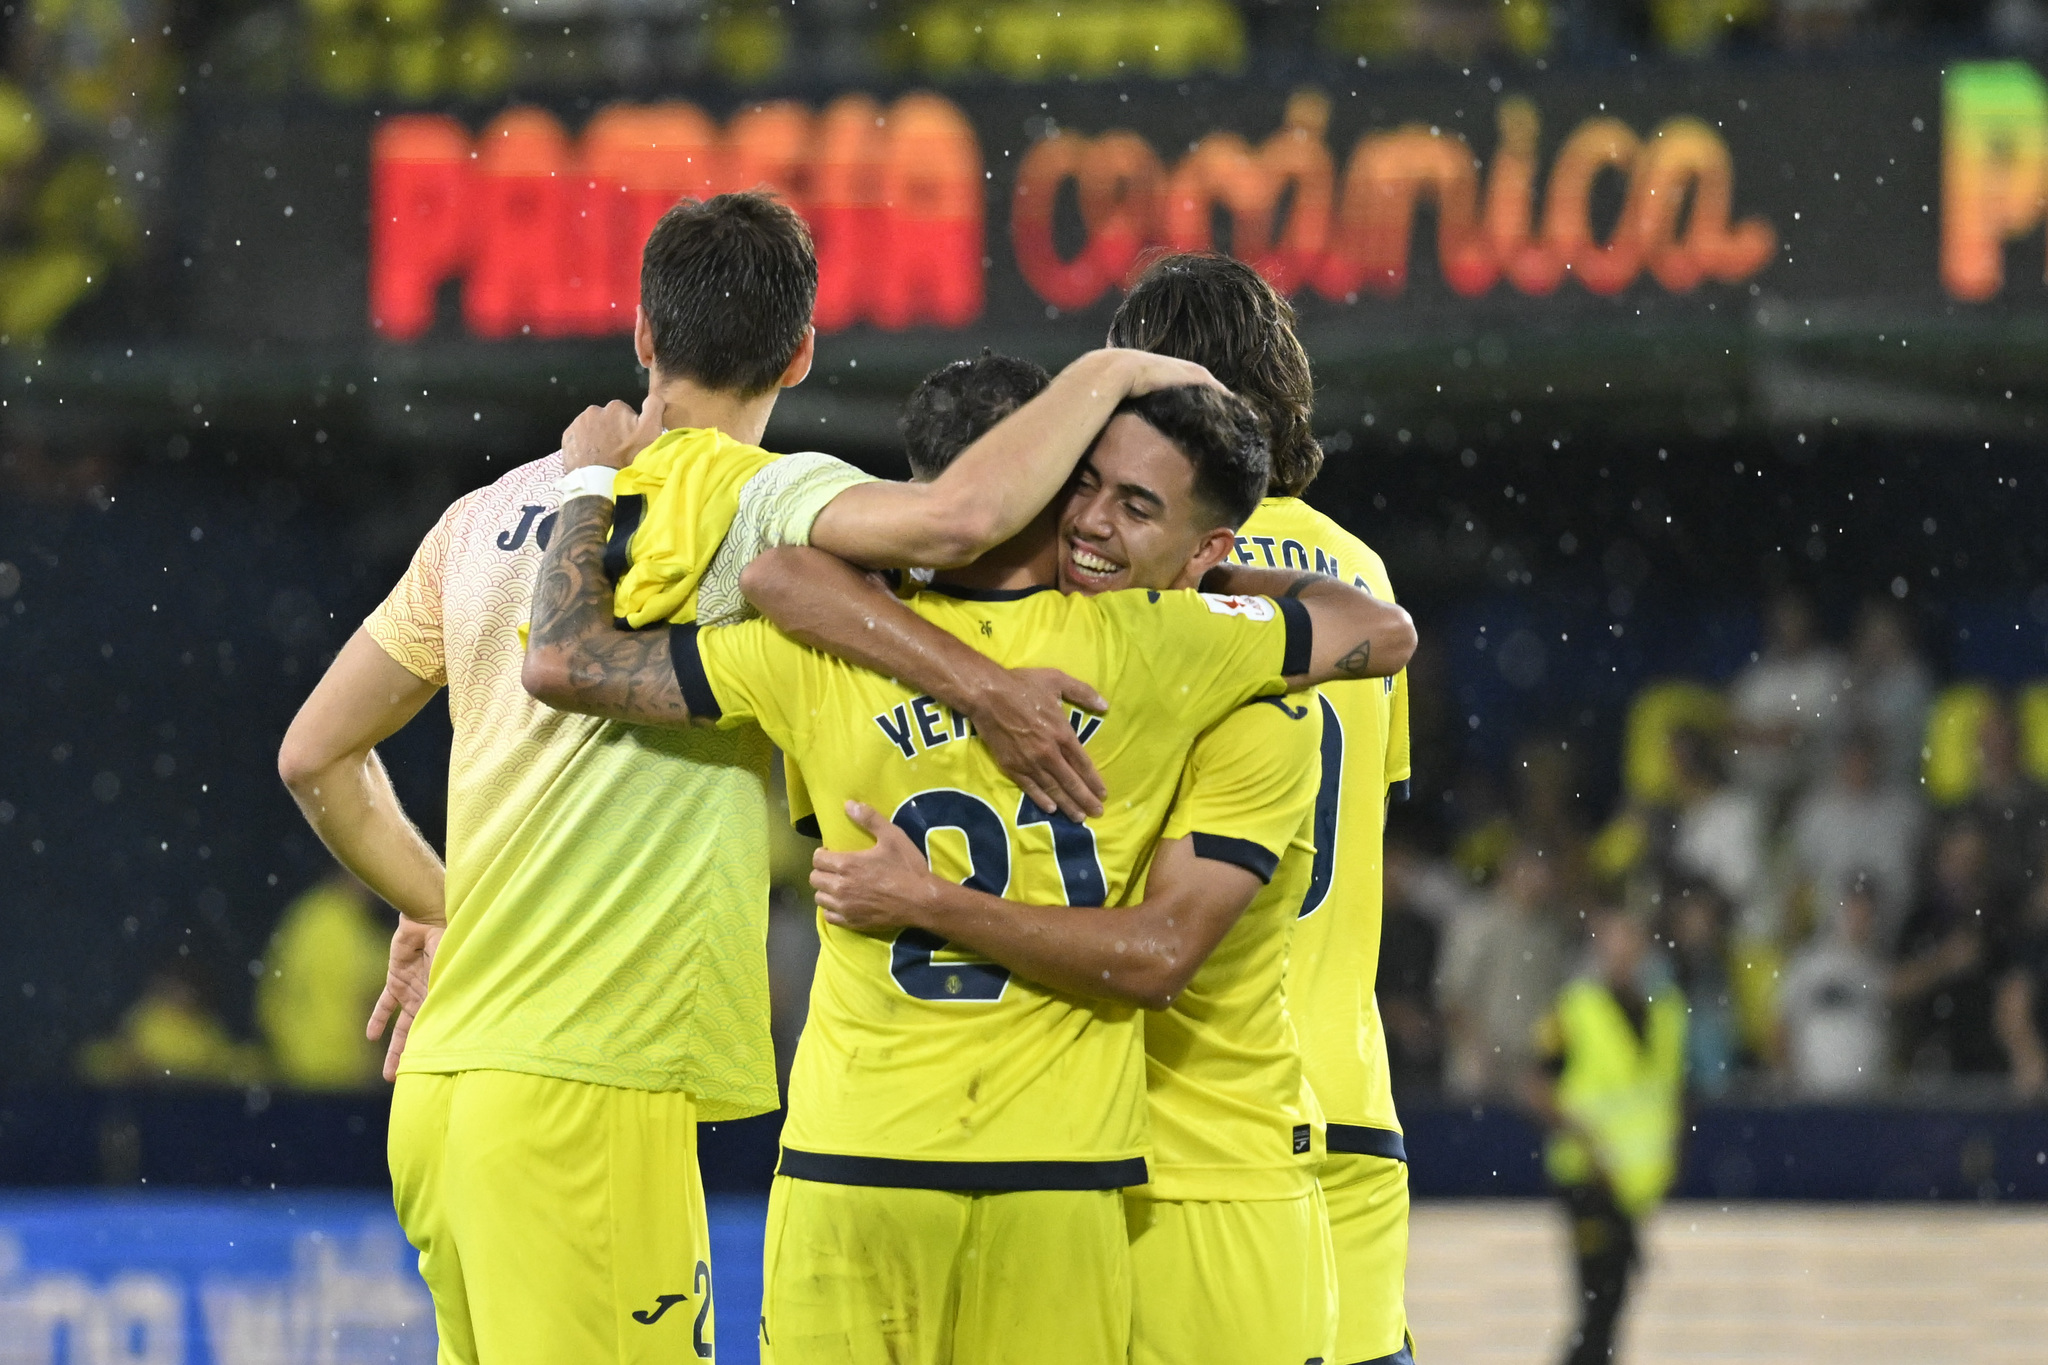 El Villarreal confía en tener un buen rendimiento con José Pacheta.